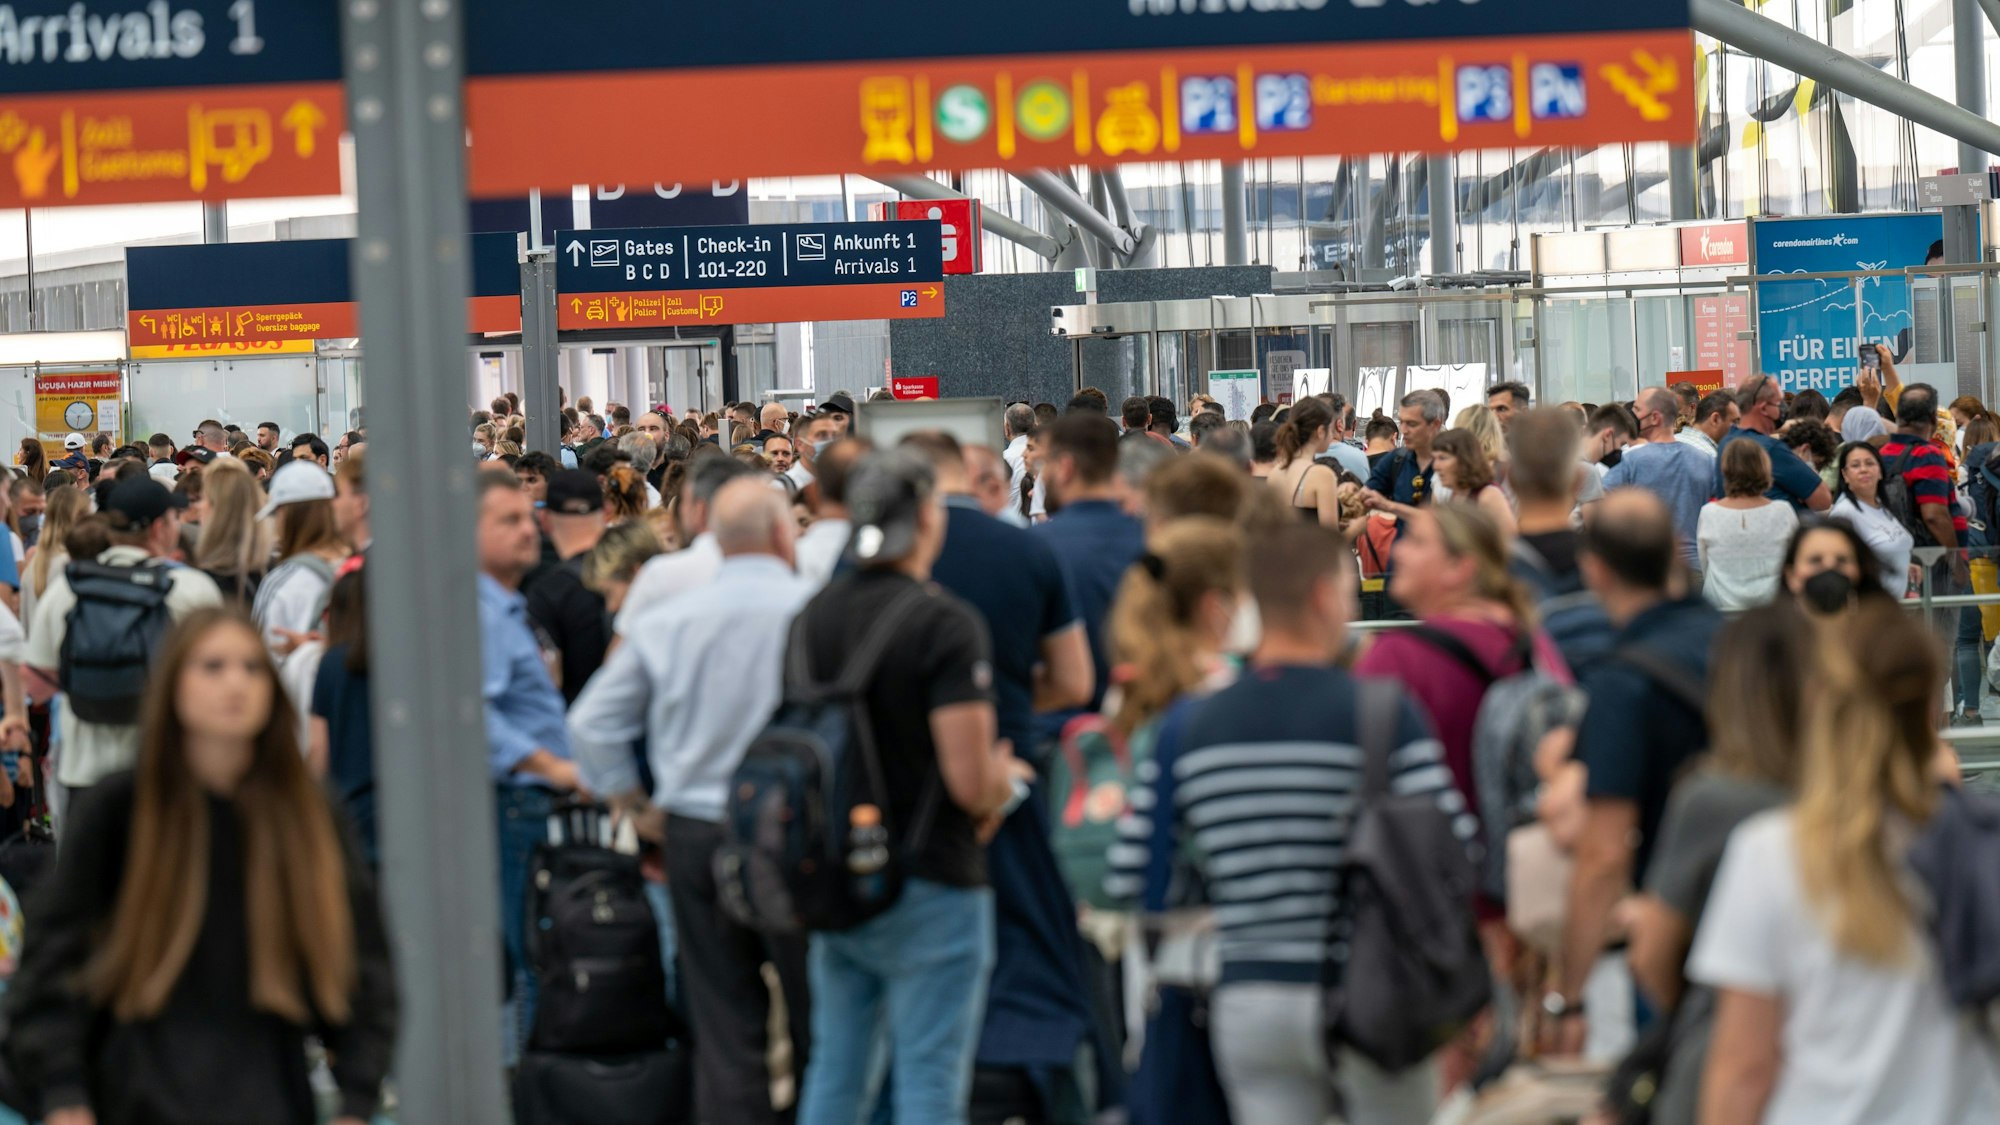 24.6.2022: Am Flughafen Köln-Bonn haben sich extrem lange Warteschlangen von Fluggästen gebildet, weil nicht genug Sicherheitspersonal für den Security Check vor den Gates vorhanden ist.